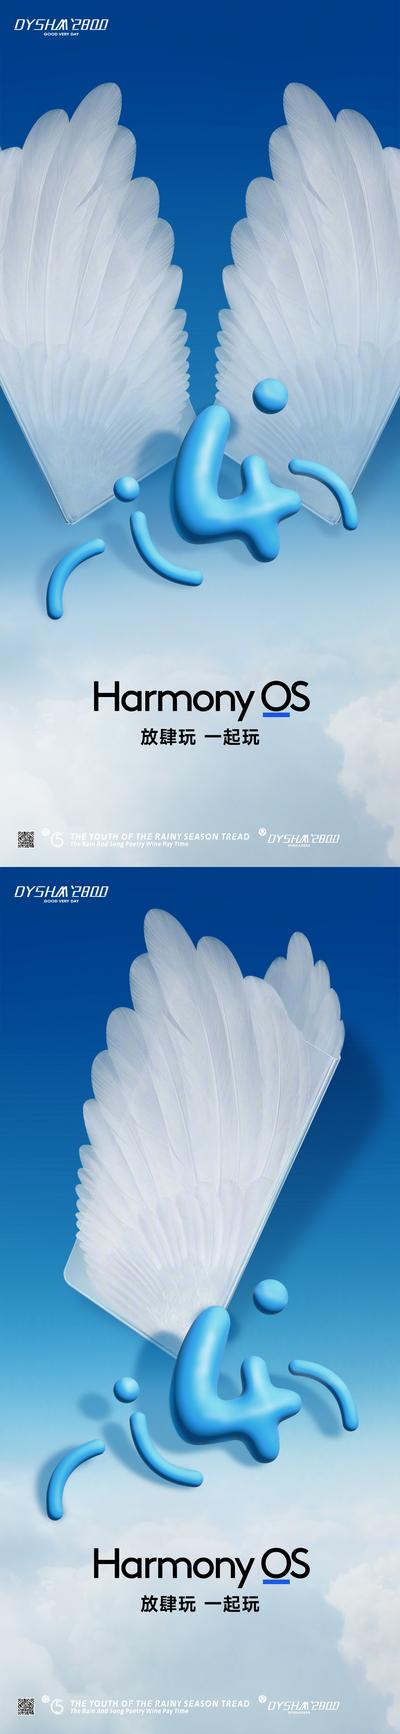 南门网 广告 海报 手机 品牌 海报 鸿蒙 翅膀 4.0 大气 华为 概念 系列